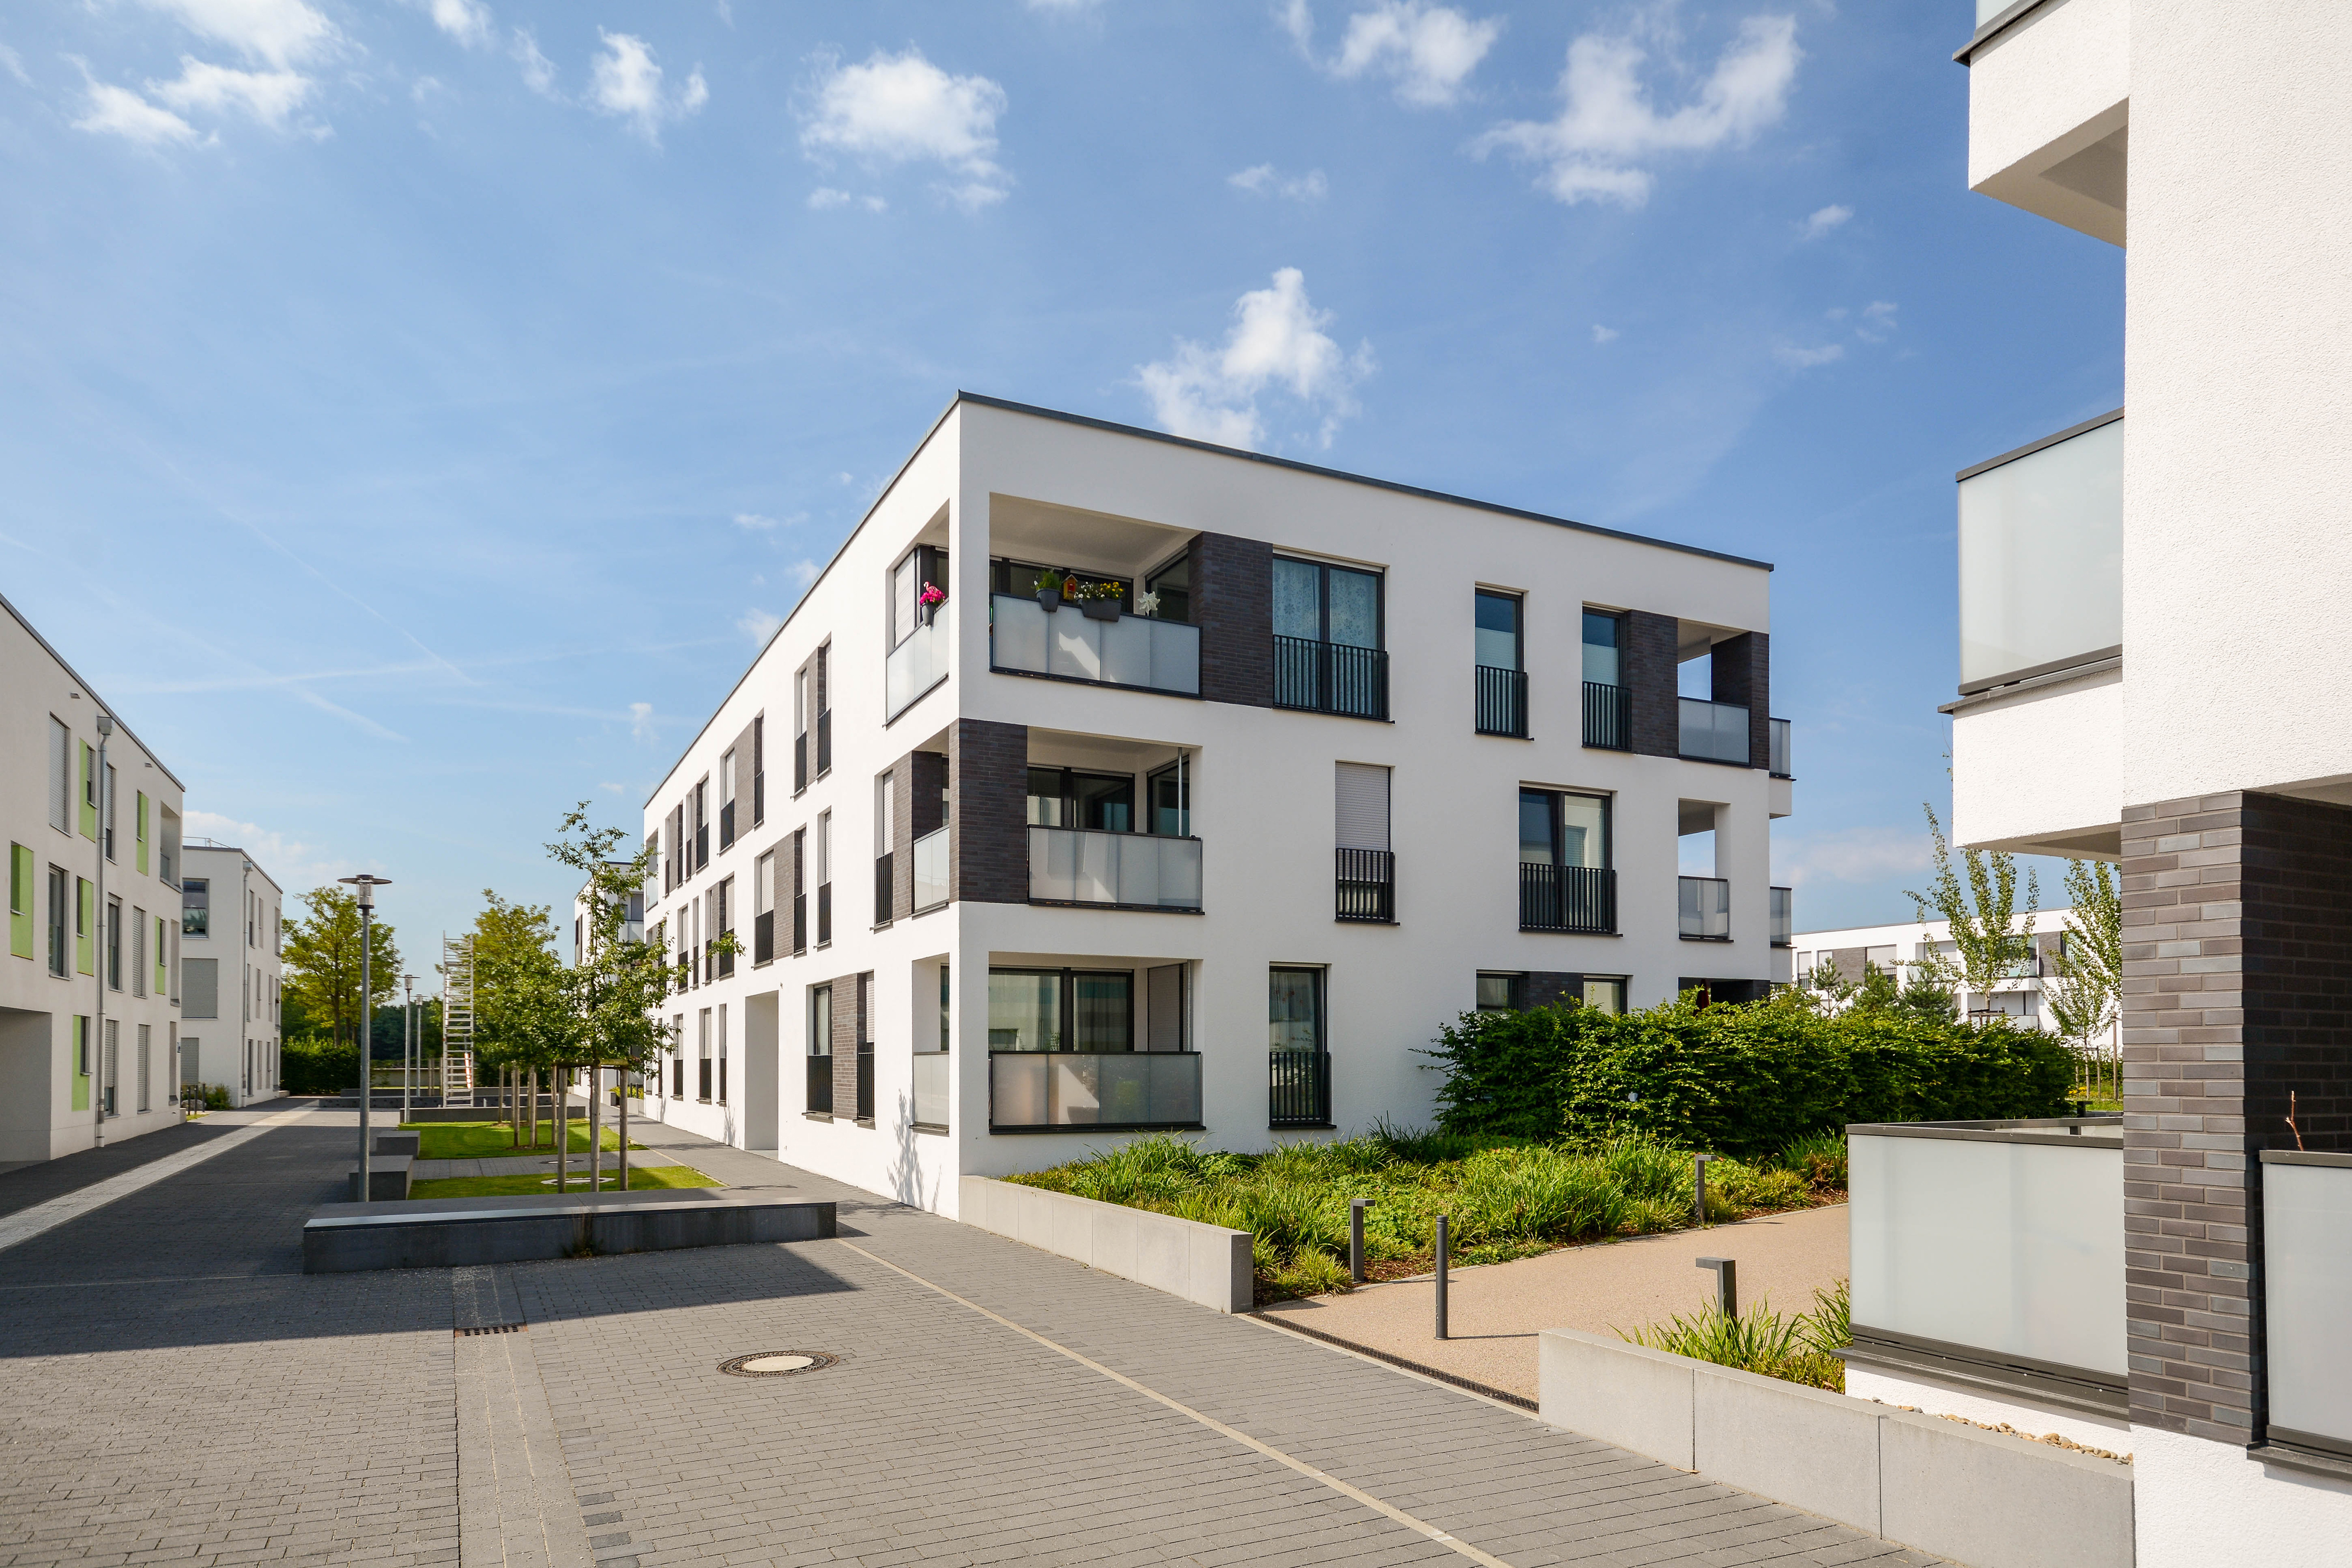 Wohnung verkaufen Titelbild-AdobeStock_214142861.jpeg 5 einfache Schritte um Ihre Wohnung in Köln schnell und sicher zu verkaufen